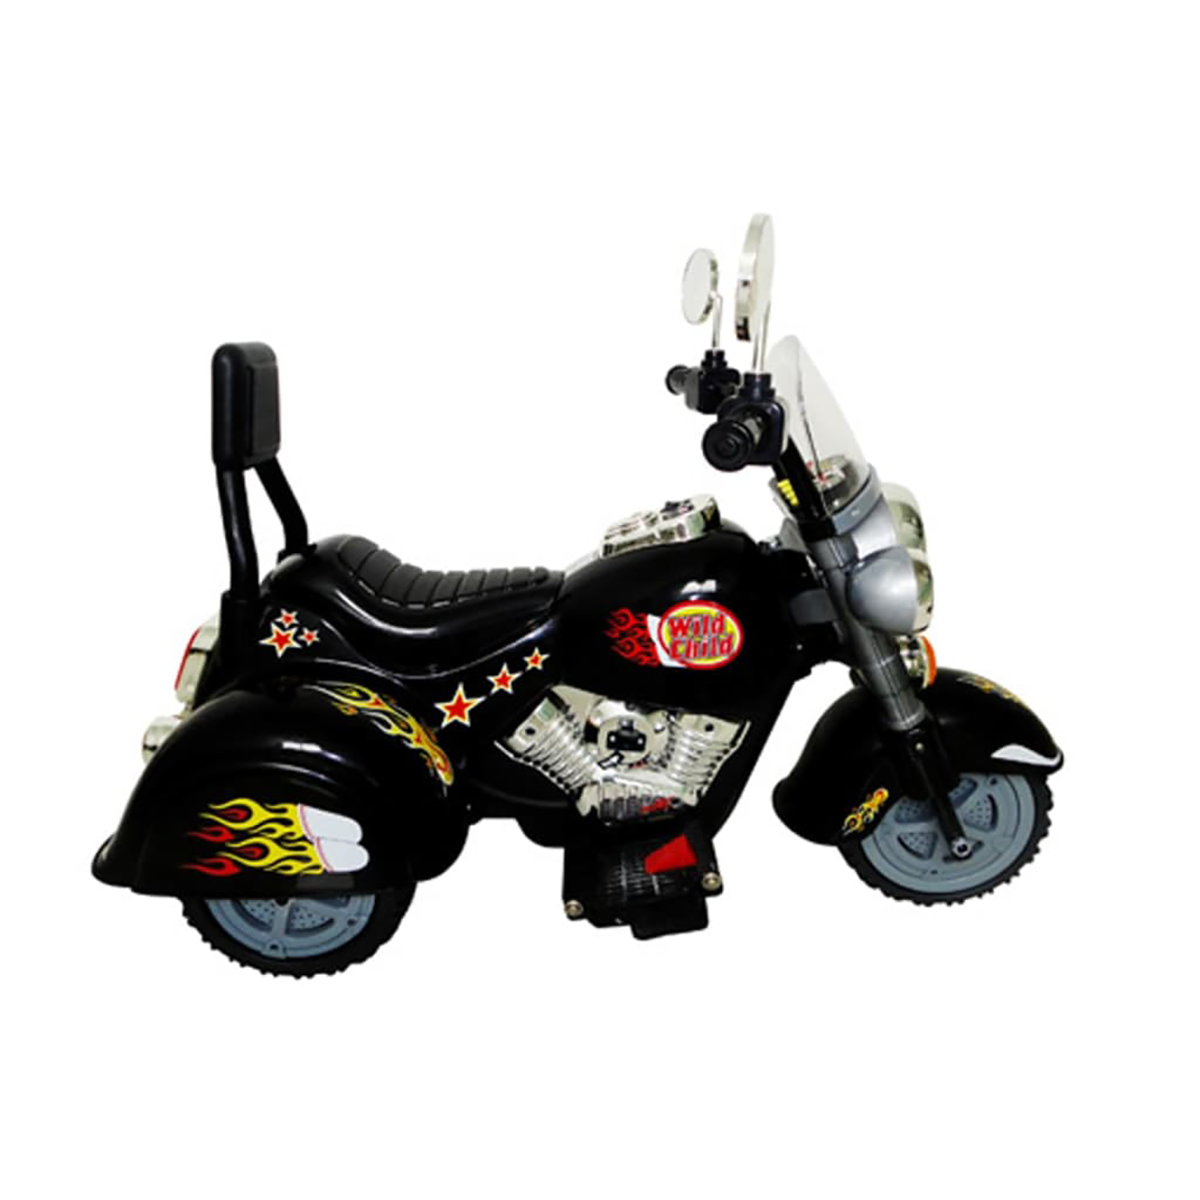 VIDAXL Kinder Motorrad Kinderfahrzeug Chopper